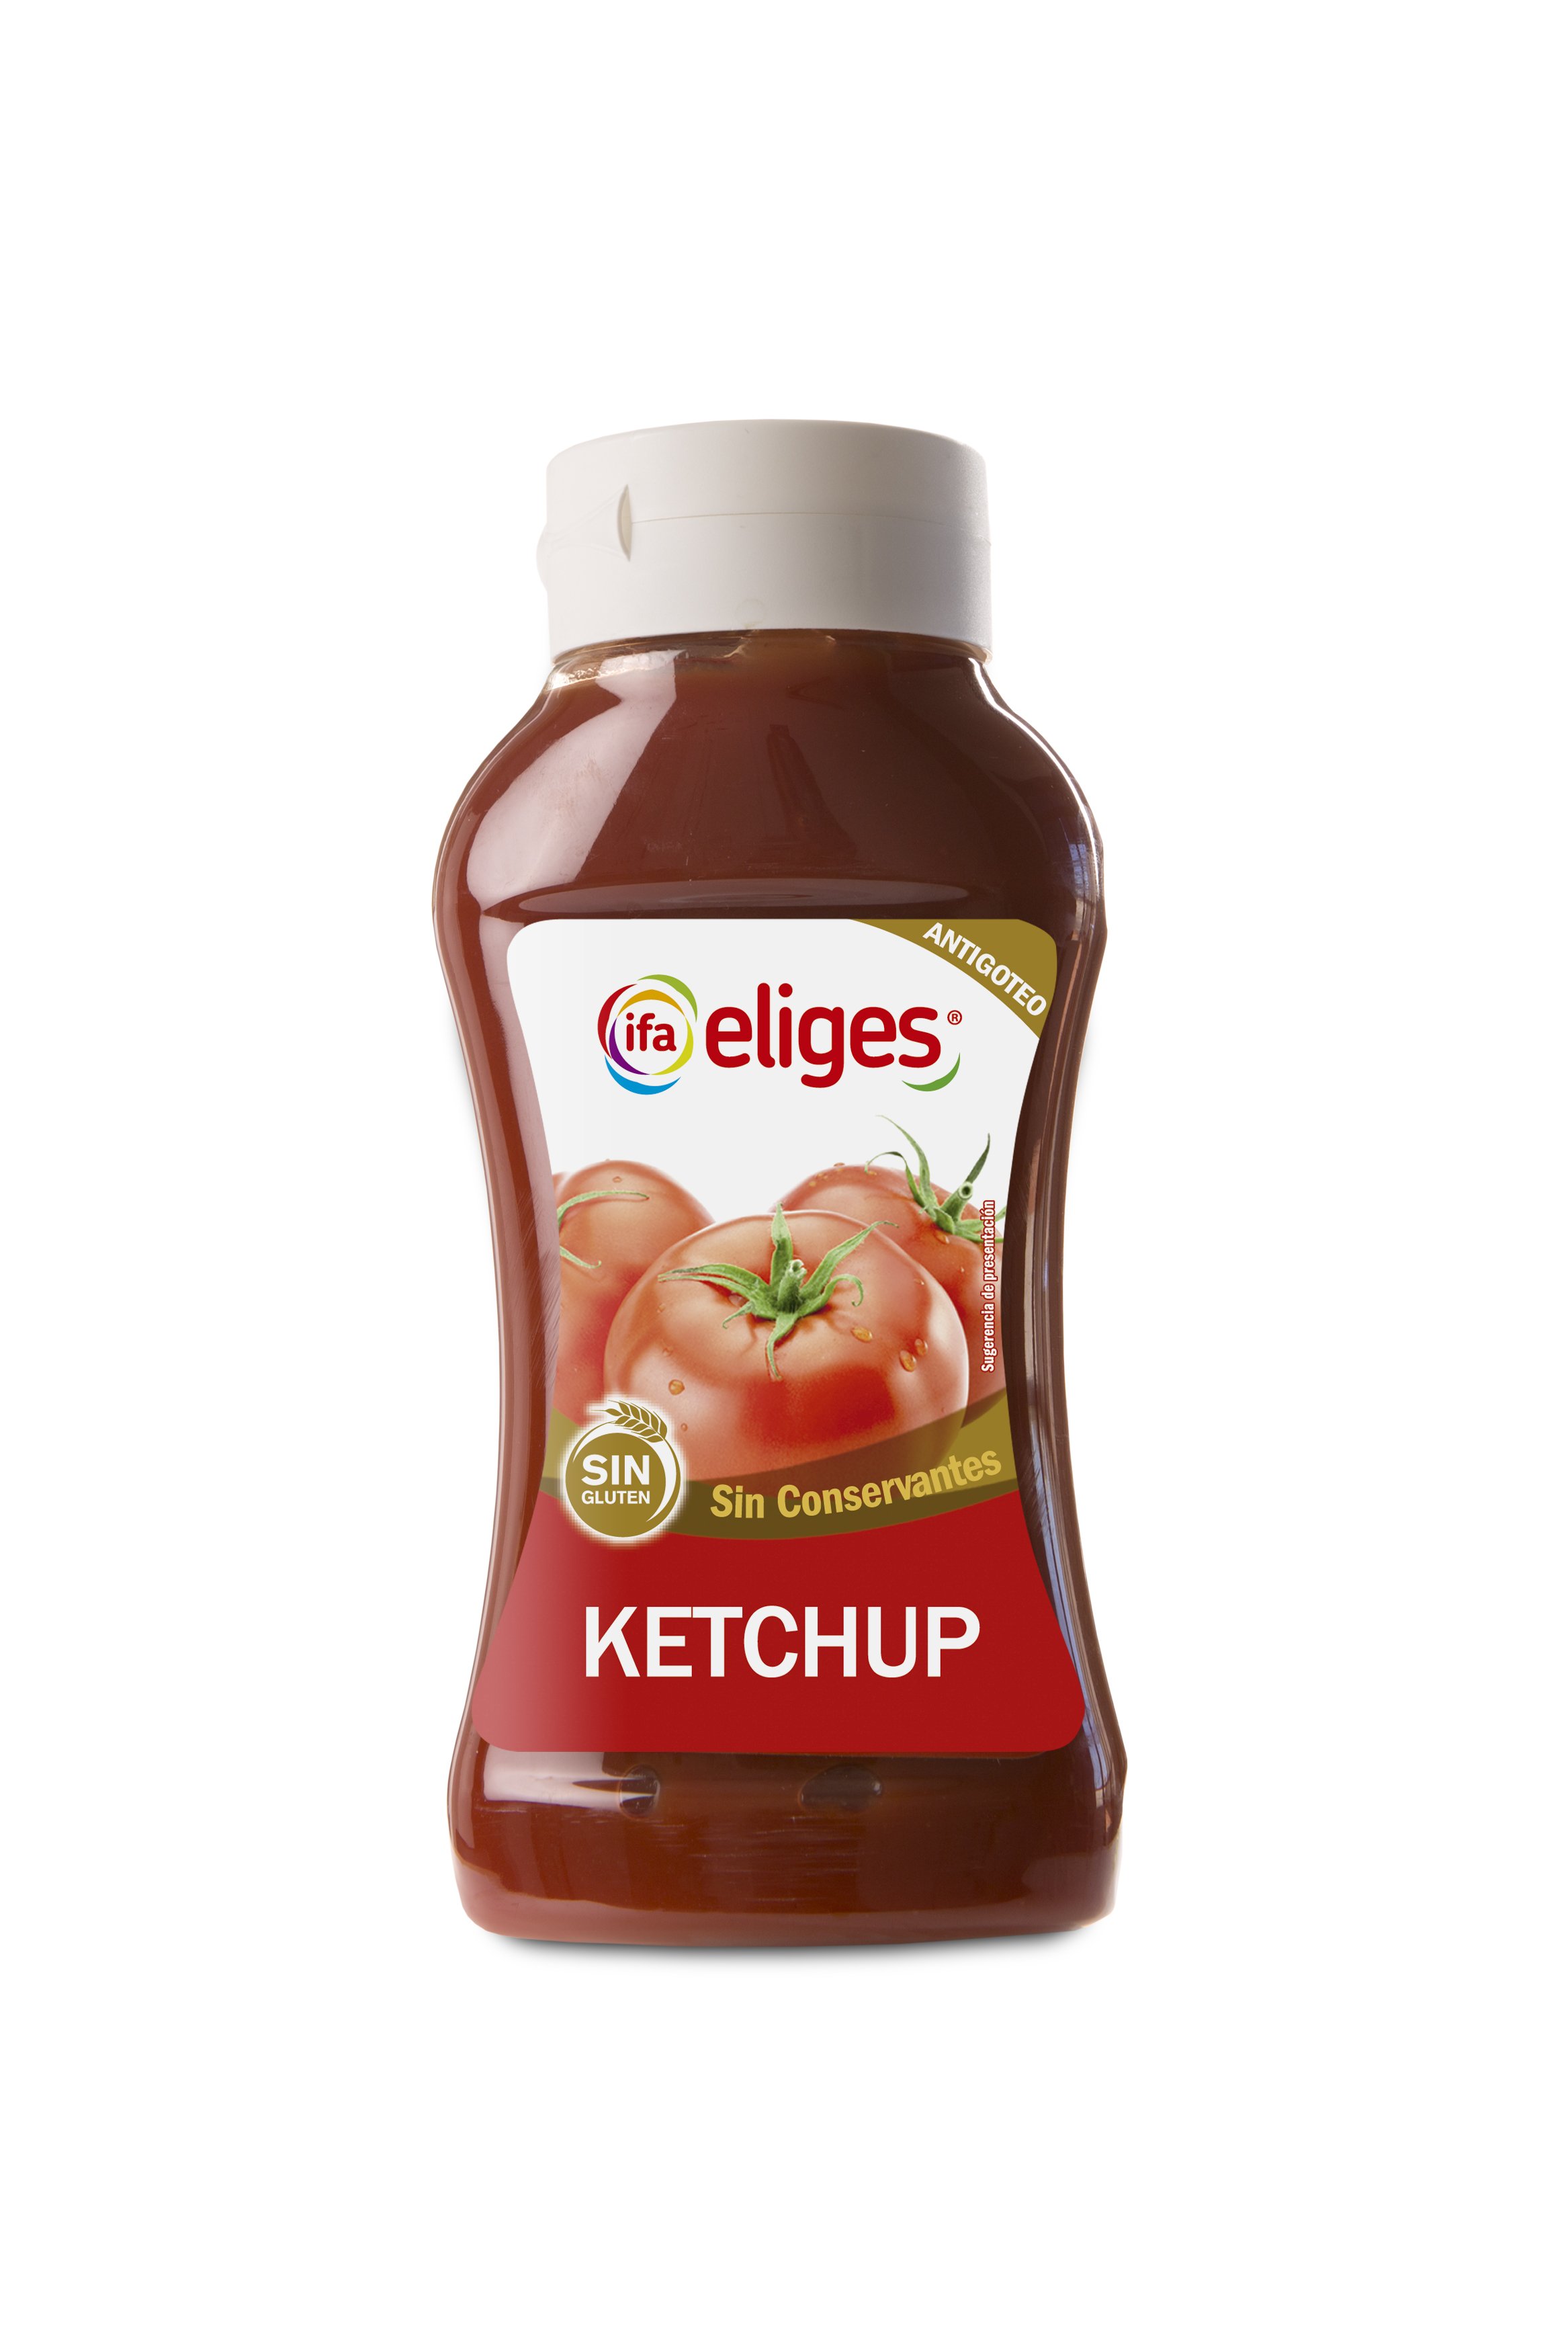 responder Frotar Cien años Comprar Ketchup ifa eliges 560g en Supermercados MAS Online